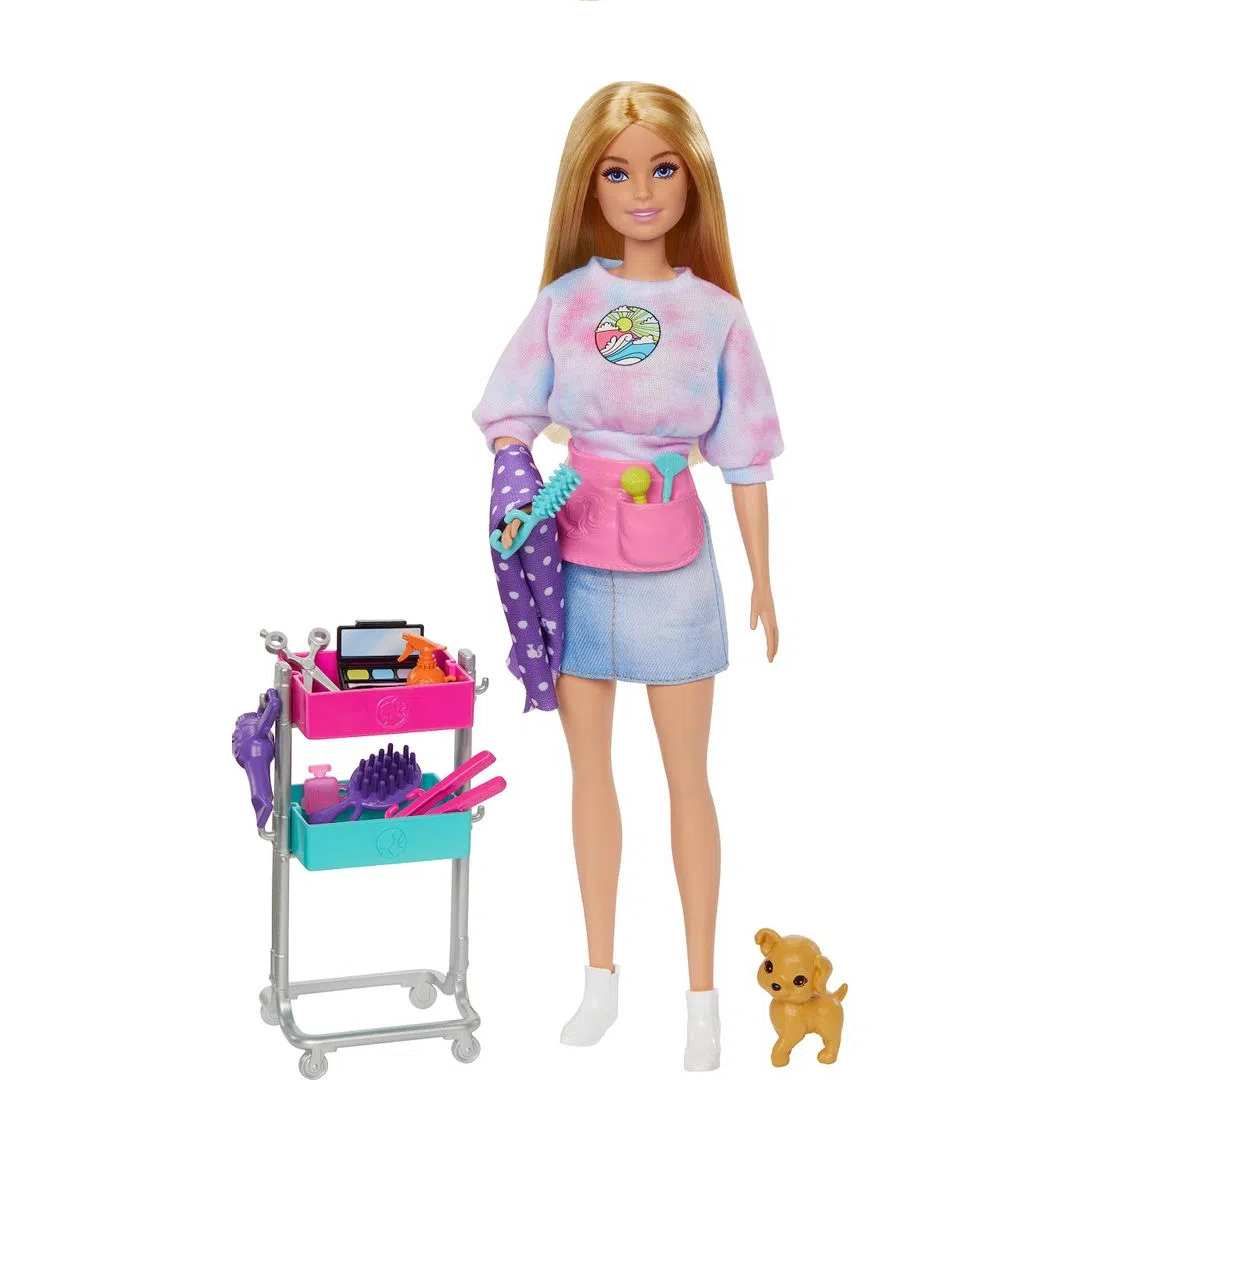 Comprar Boneca Barbie Boneca Dreamhouse com conjunto jogos de Mattel